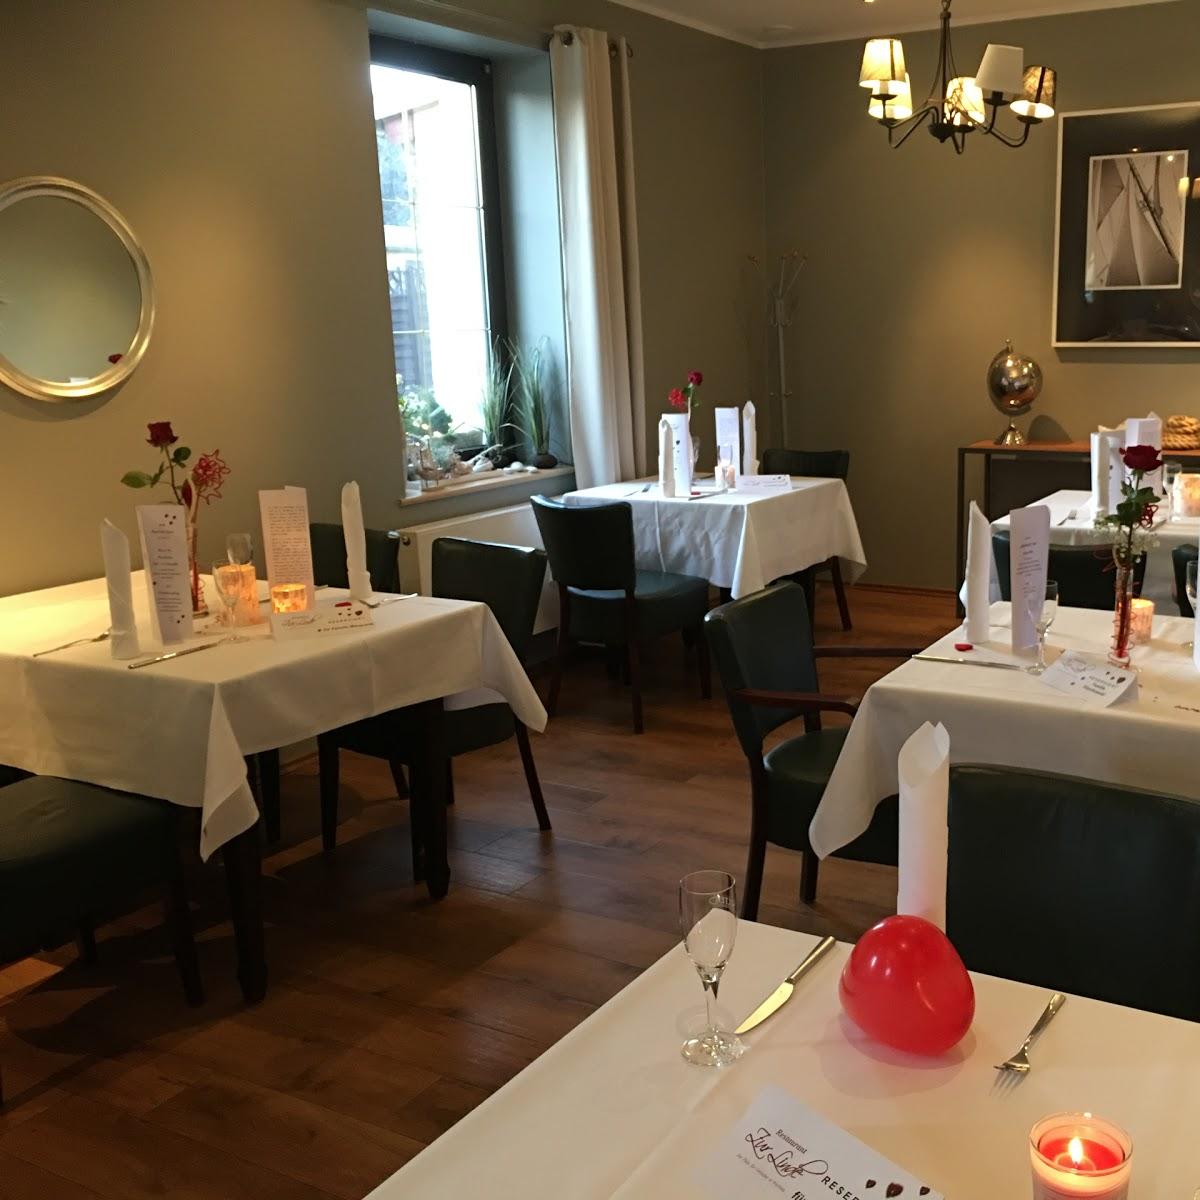 Restaurant "Zur Linde" in Markkleeberg